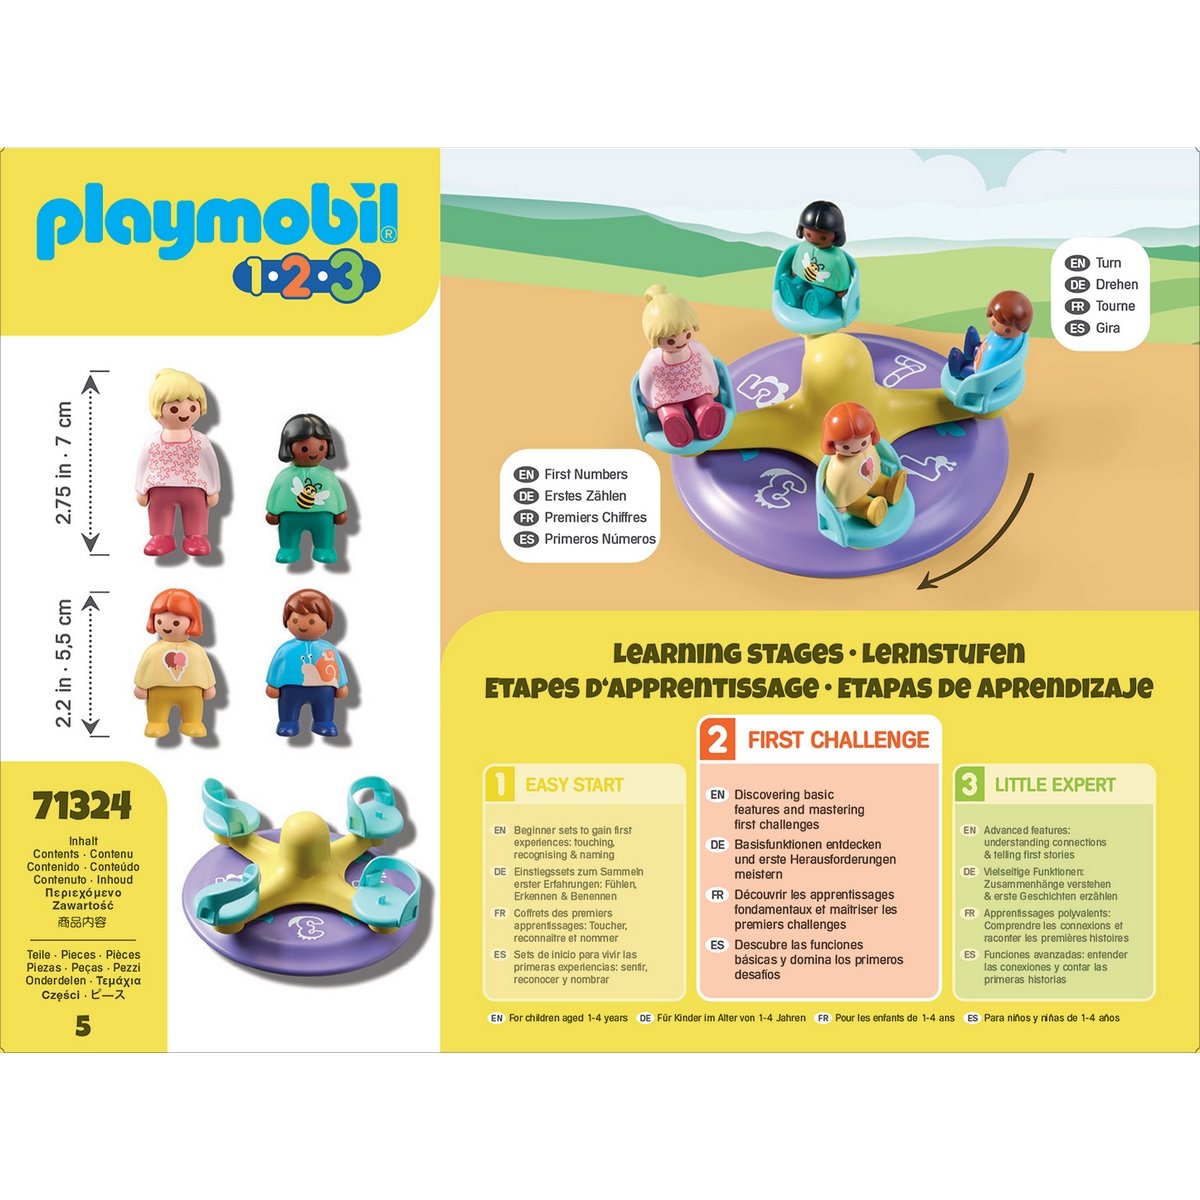 Playmobil 123, Jeux d'éveil & 1er âge